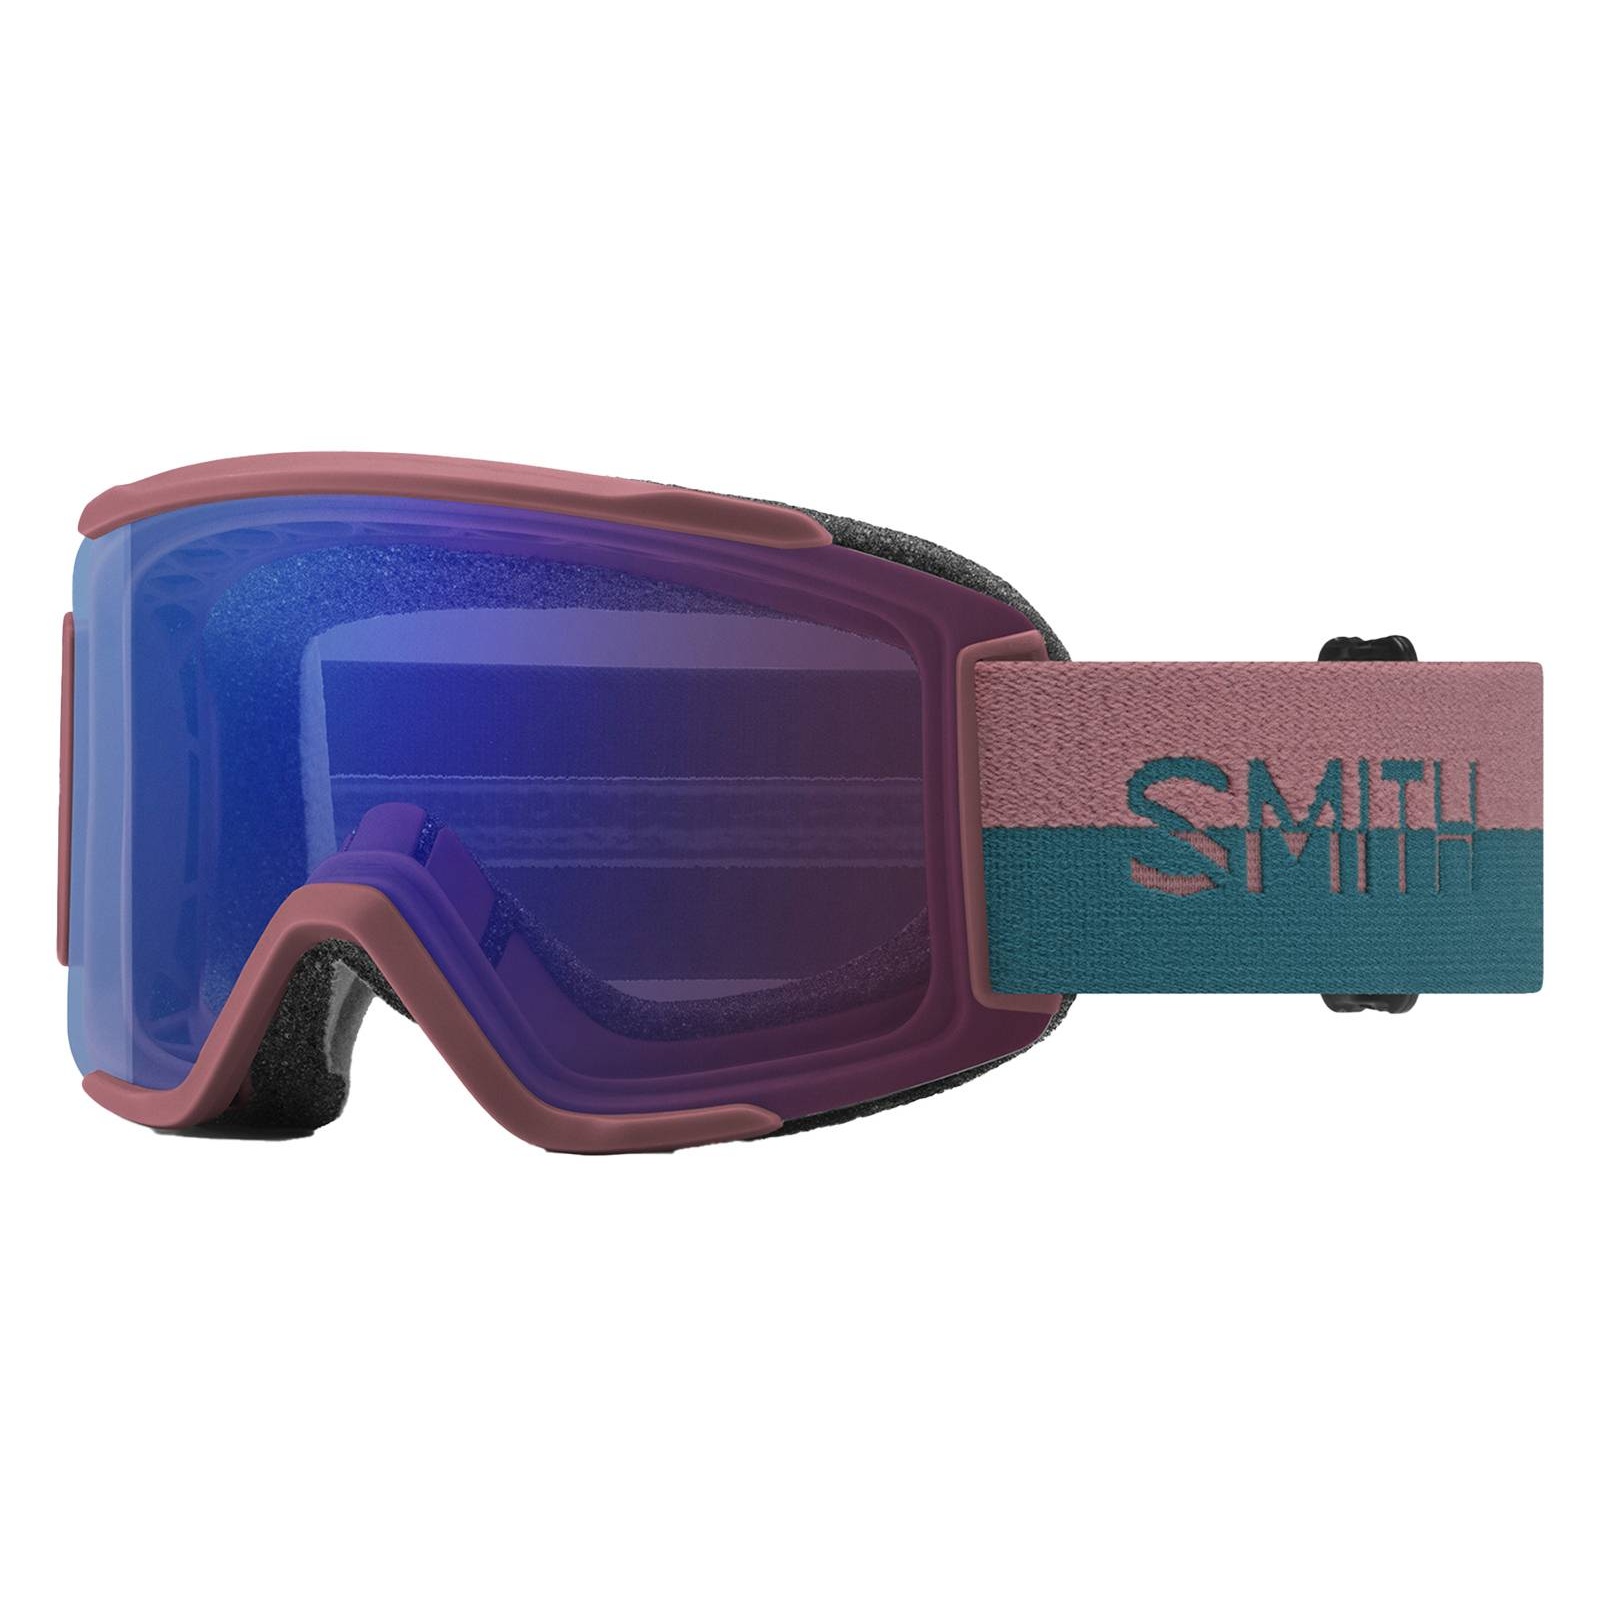 Bild von Smith Squad S ChromaPOP Skibrille (Größe One size